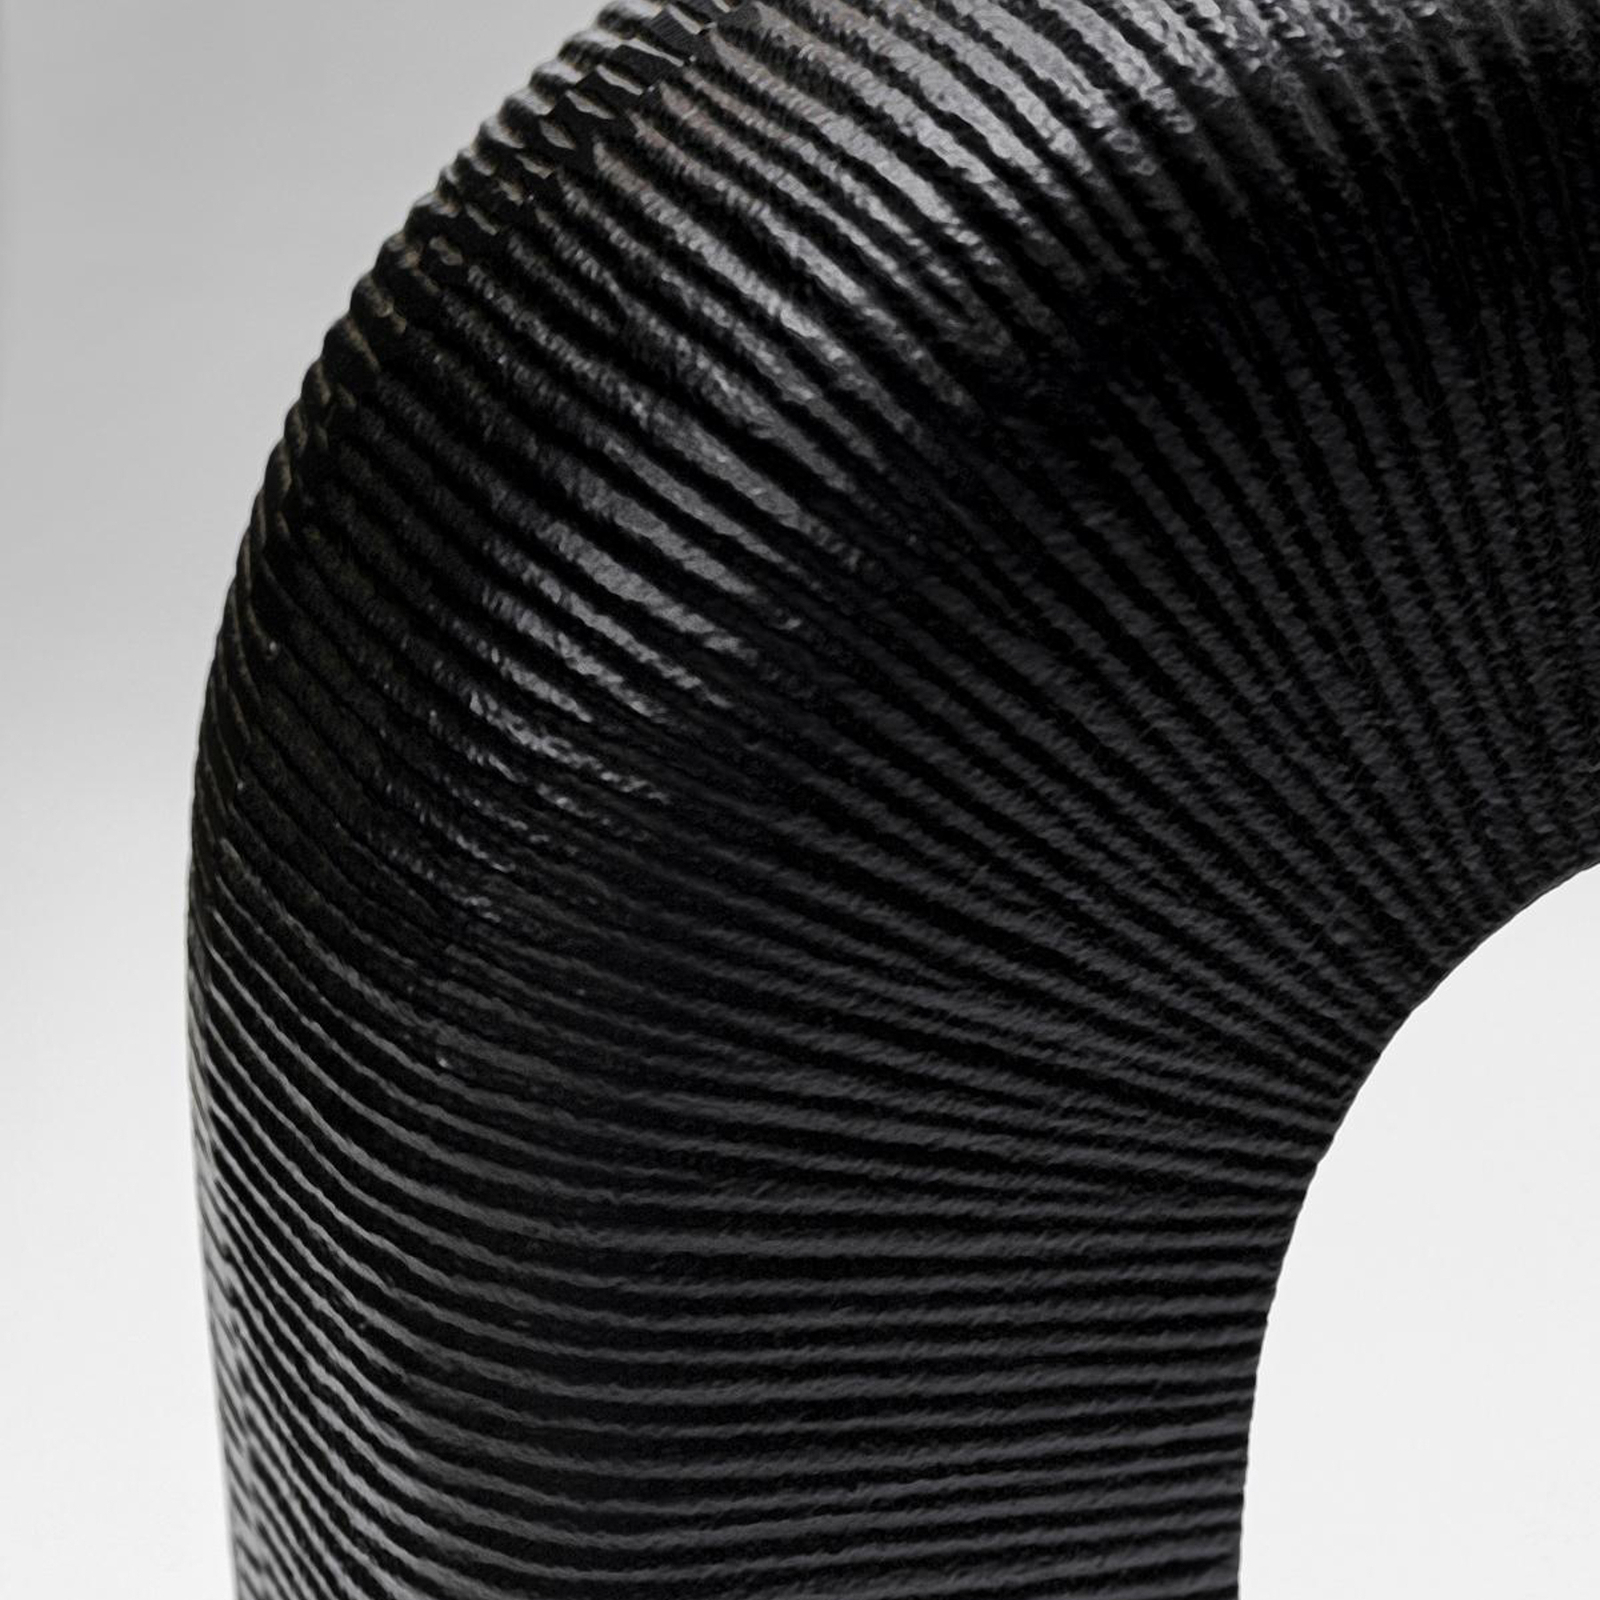 KARE table lamp Tube, black/white, linen textile, height 79 cm